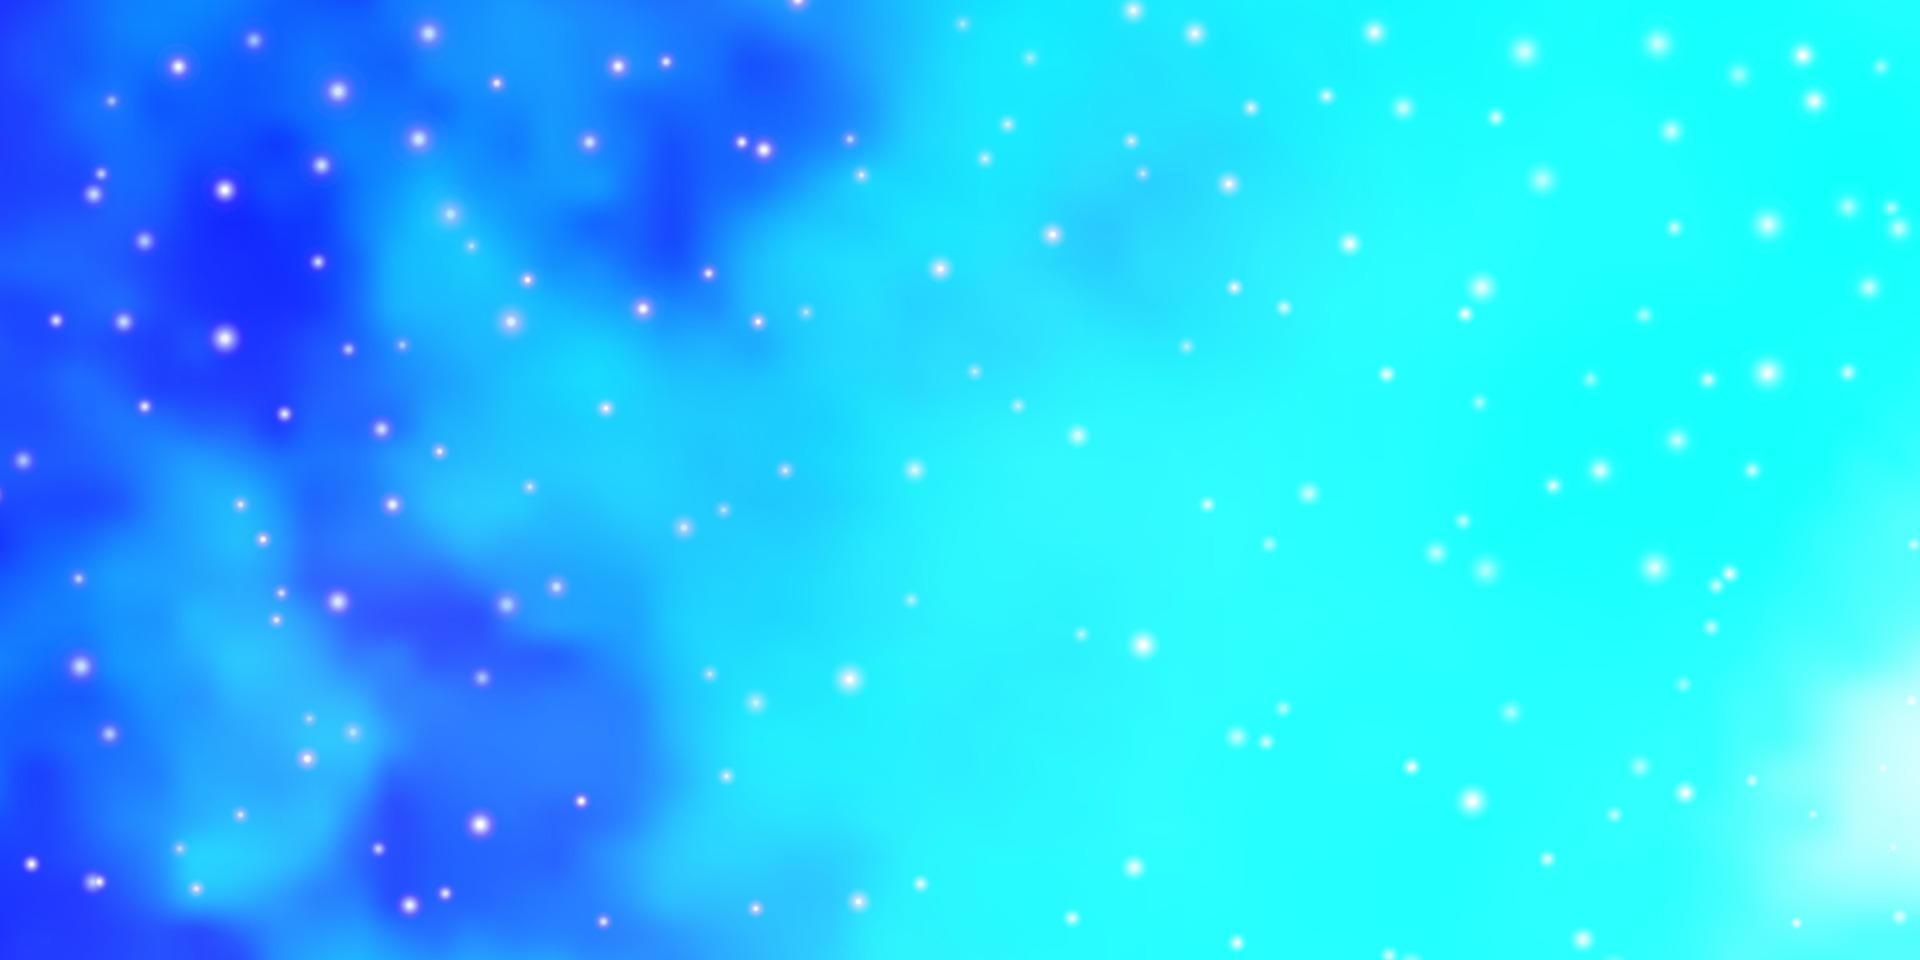 layout de vetor de luz azul com estrelas brilhantes.